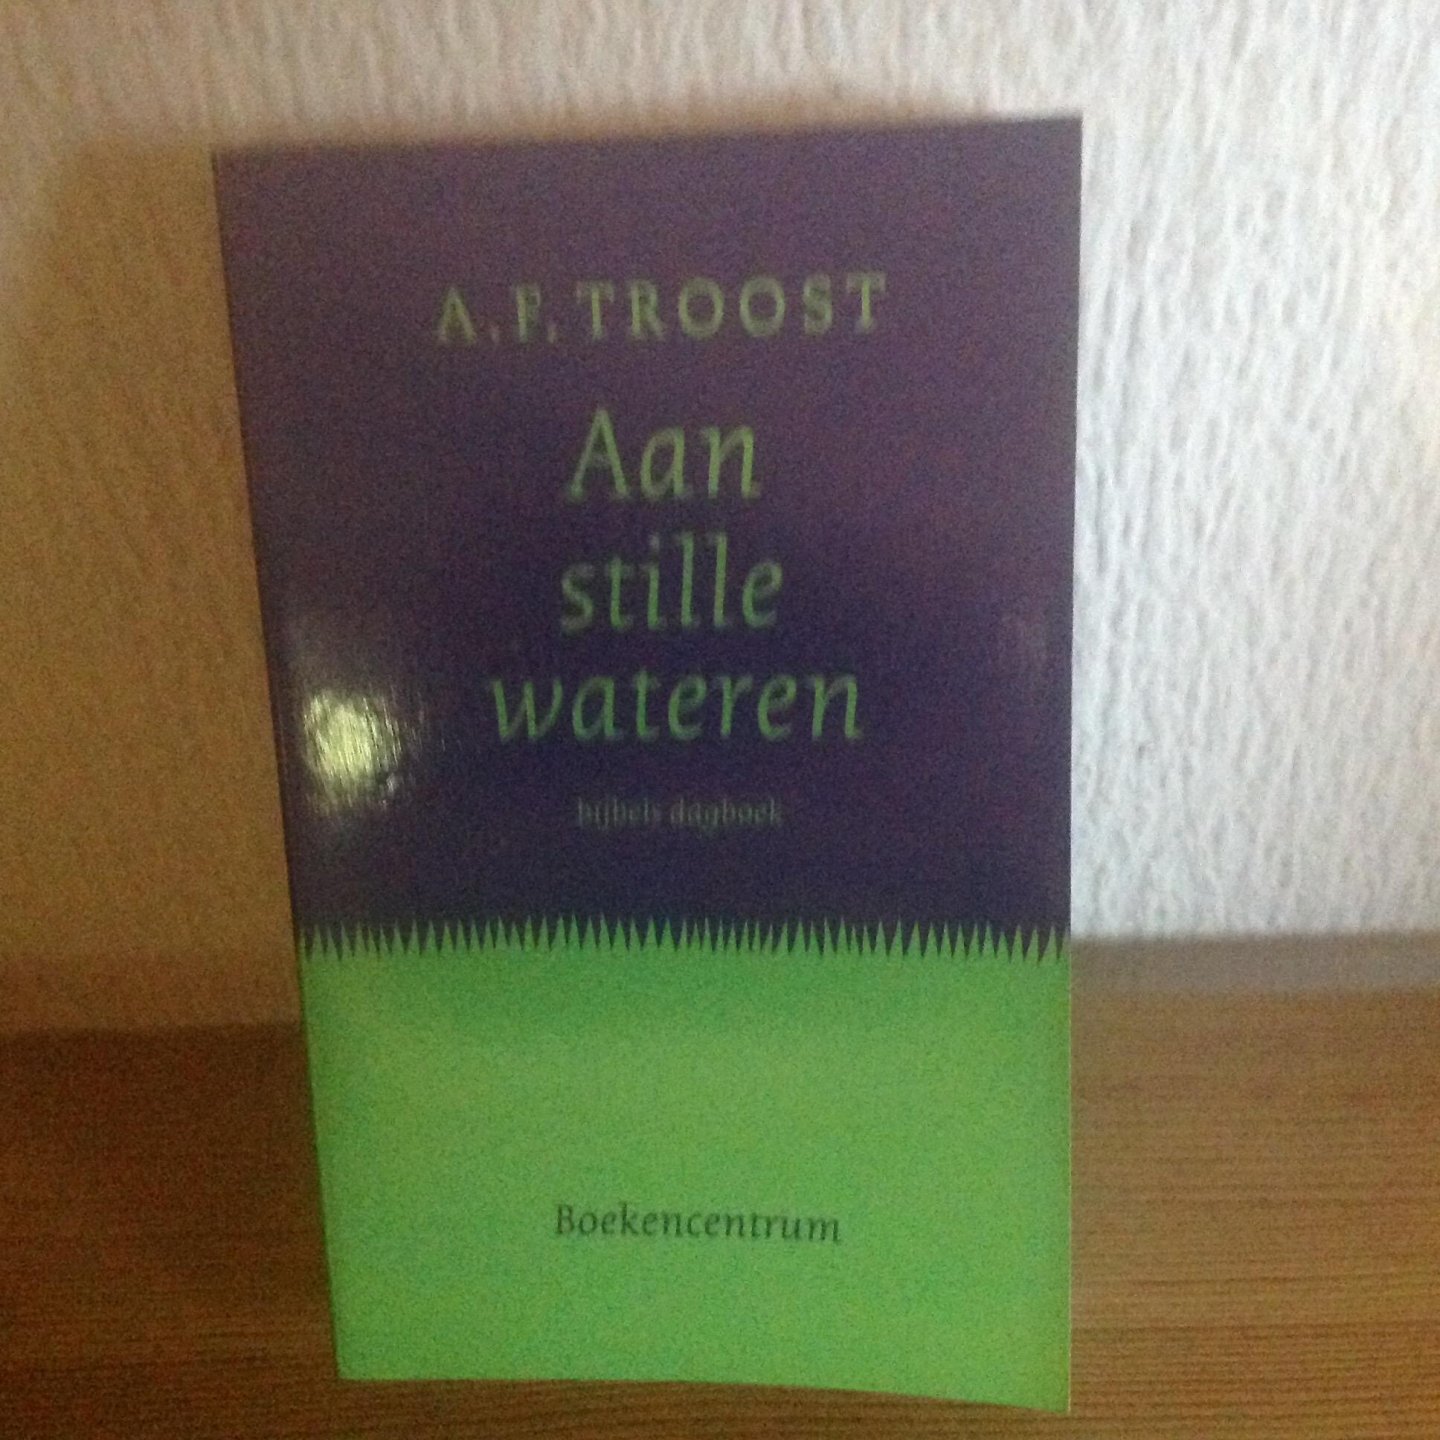 Troost, A.F. - Aan stille wateren / bijbels dagboek